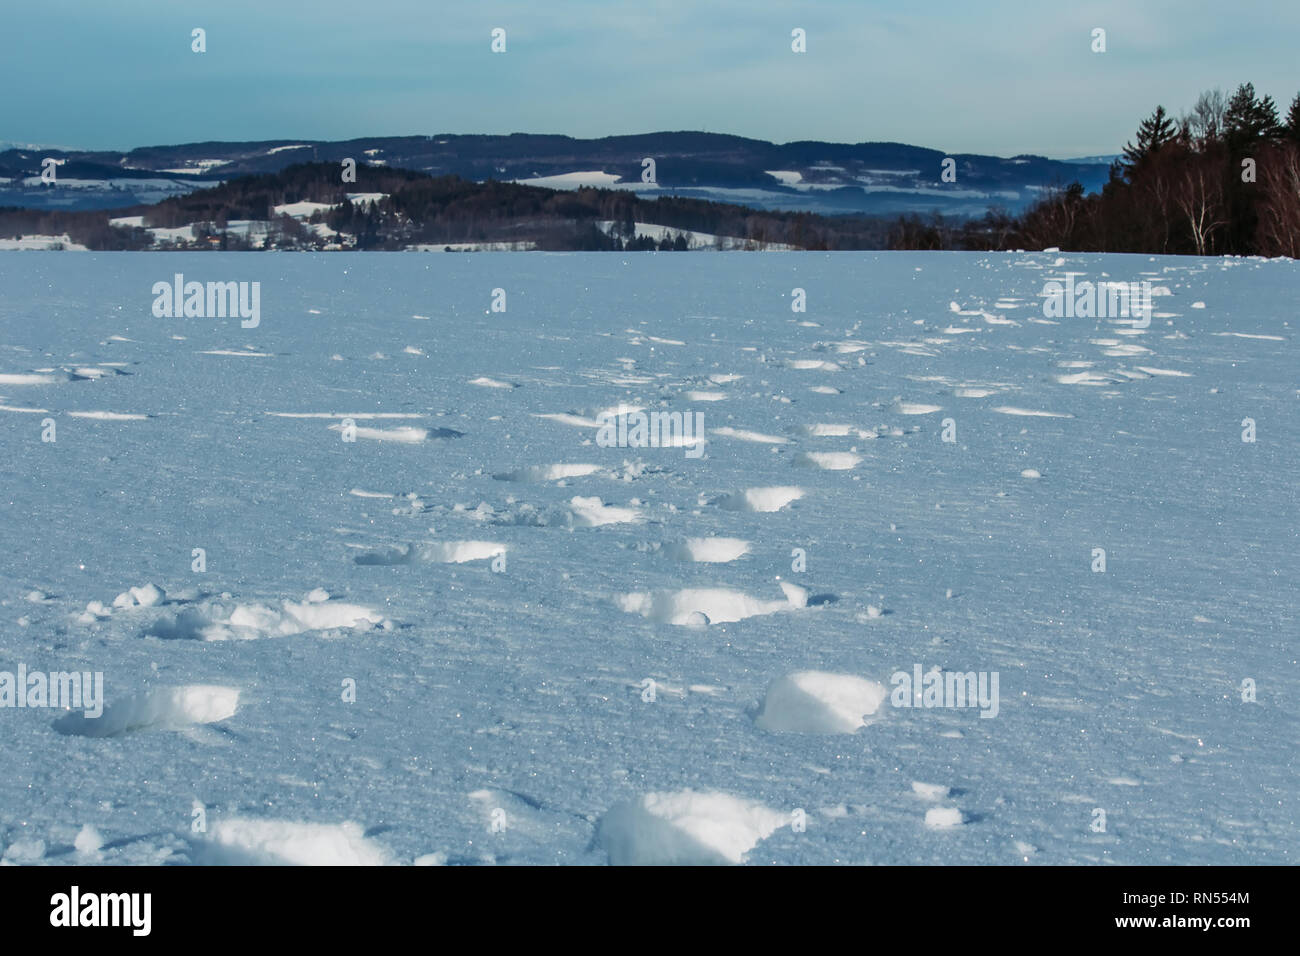 Detail of feet in snow in winter czech landscape Stock Photo